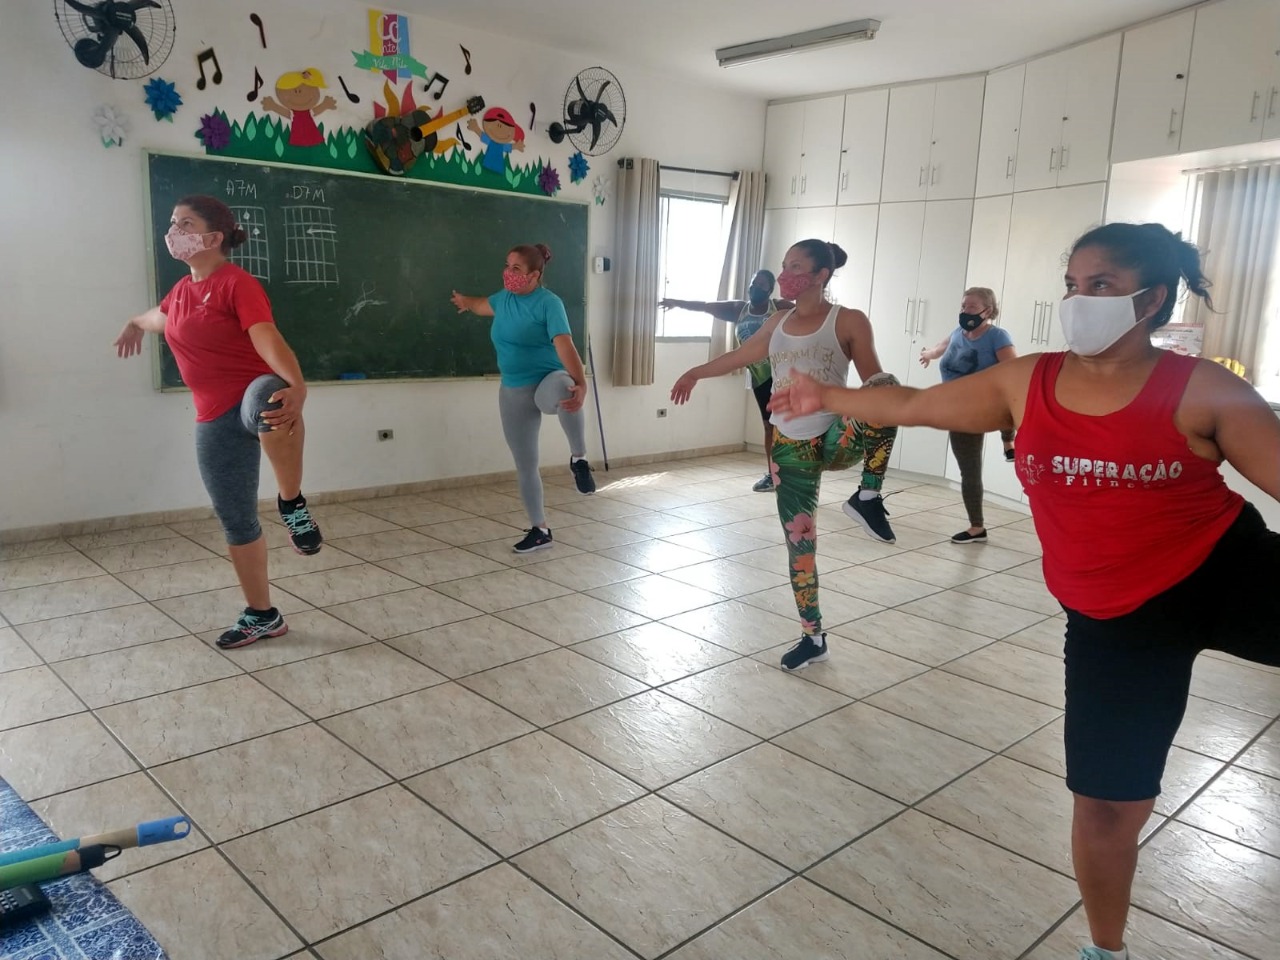 Seis mulheres de máscara praticando exercícios físicos.